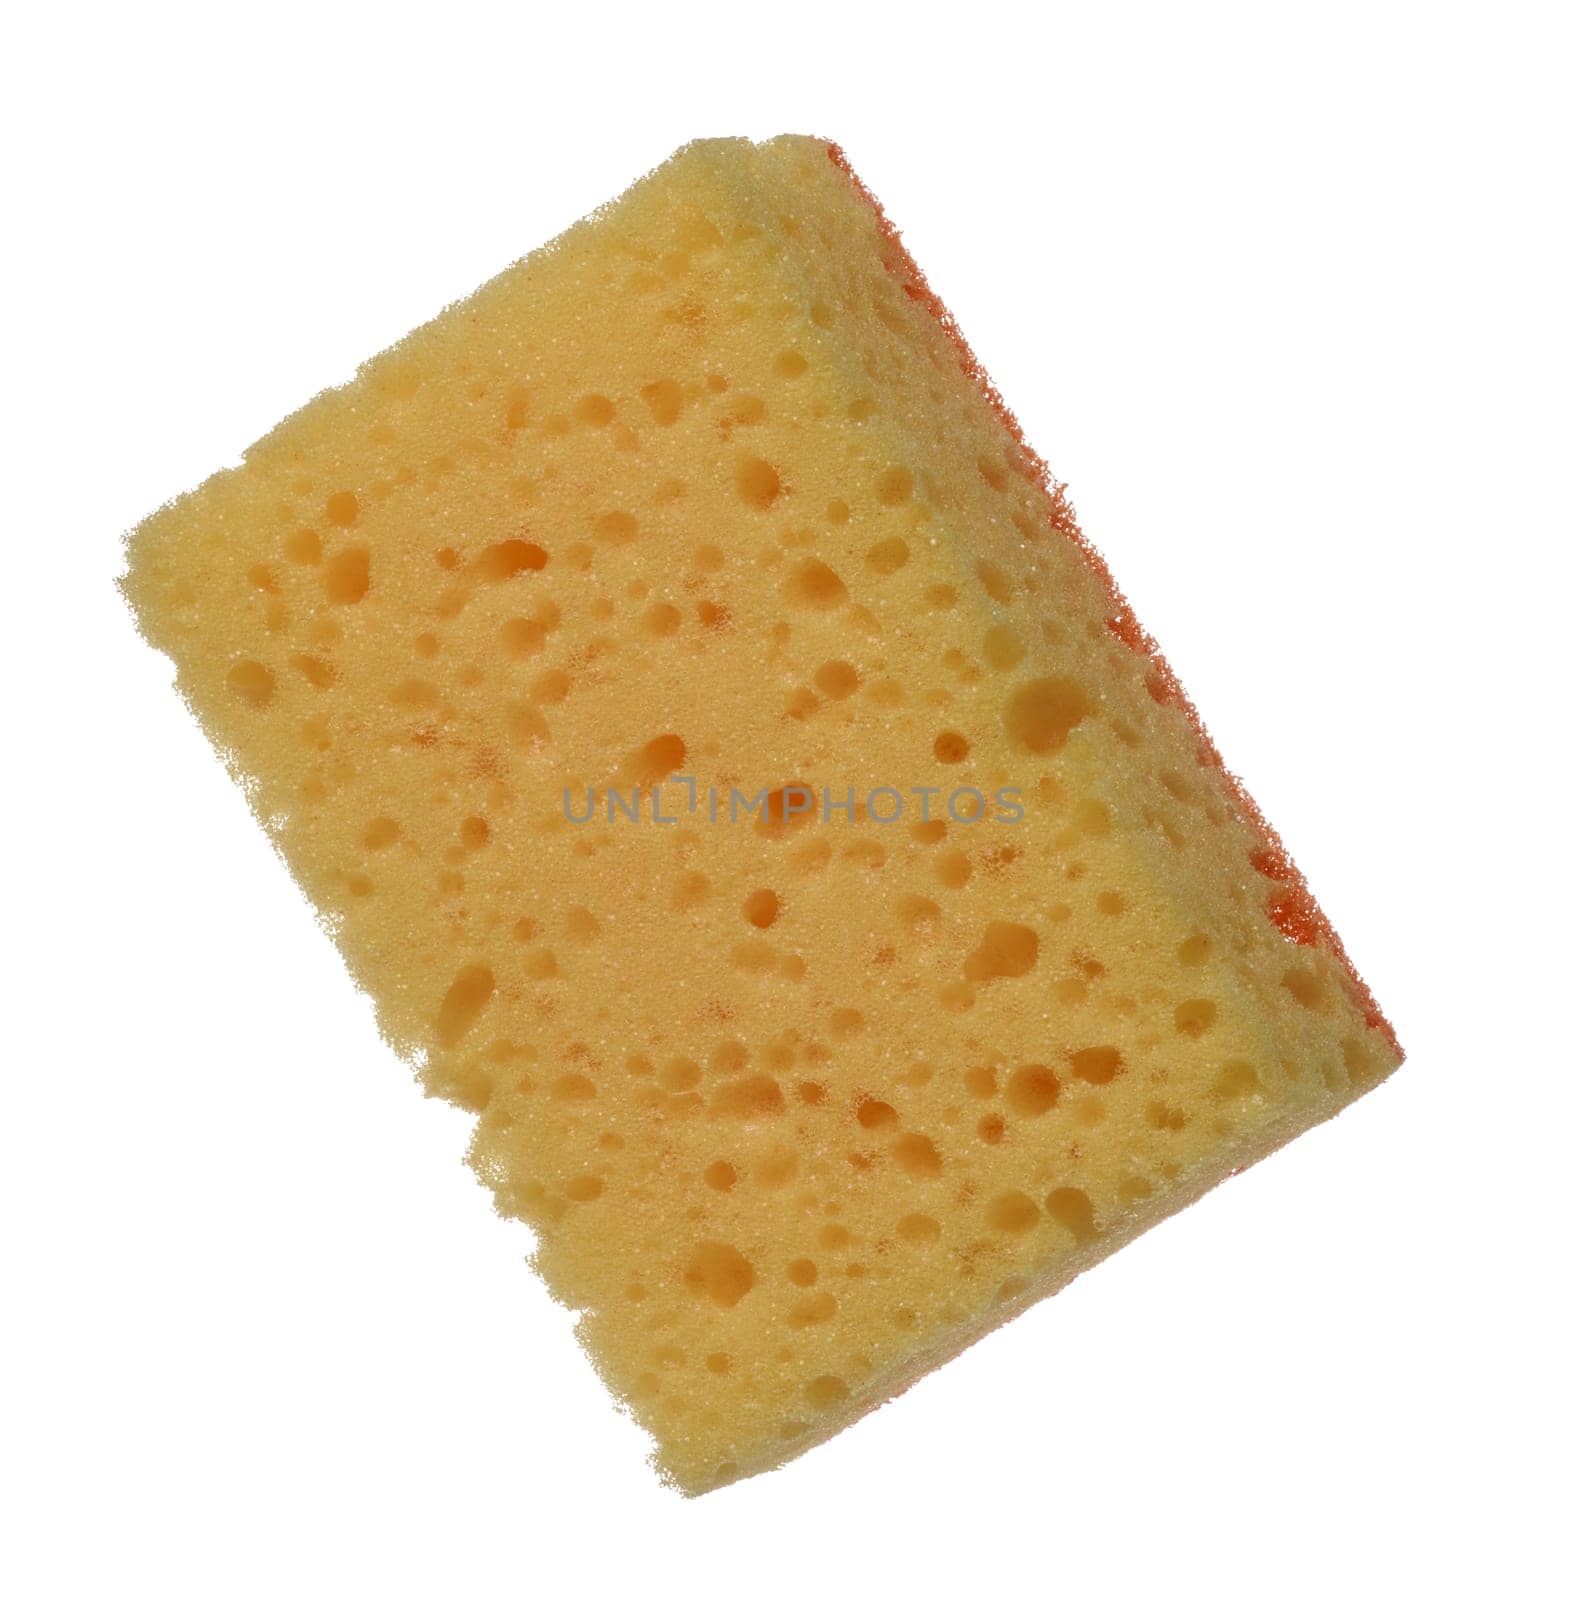 Rectangular dish sponge on isolated background